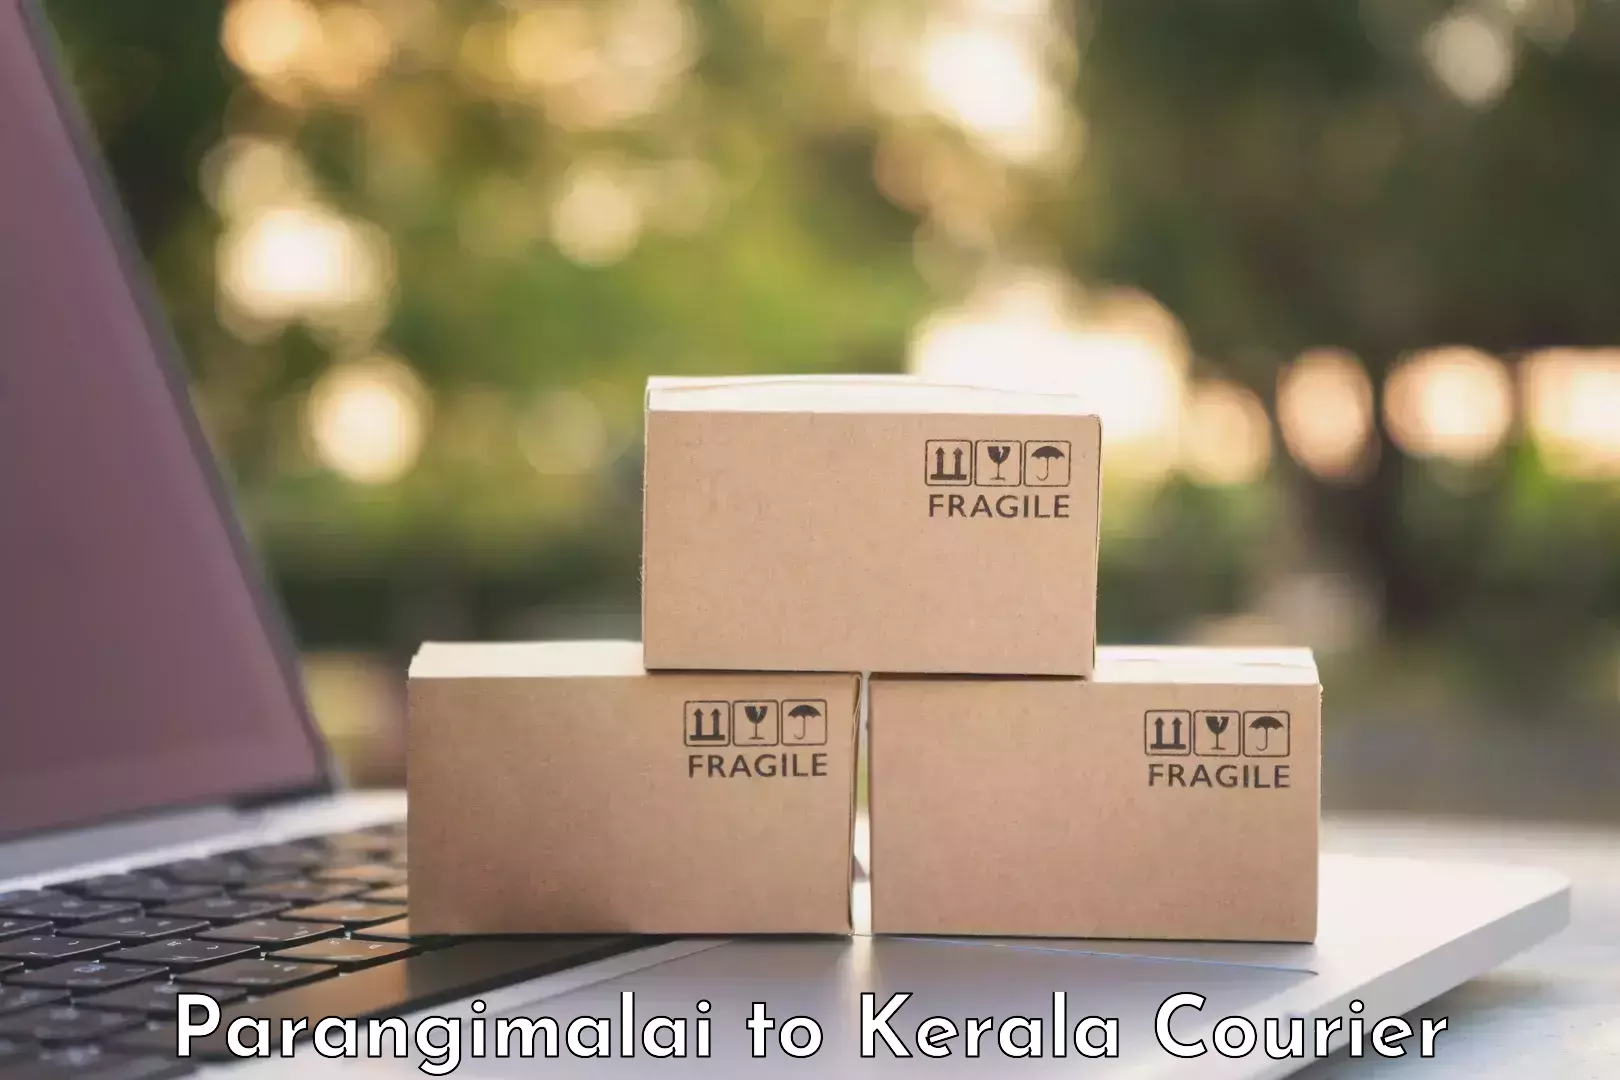 Baggage courier rates calculator Parangimalai to Kerala